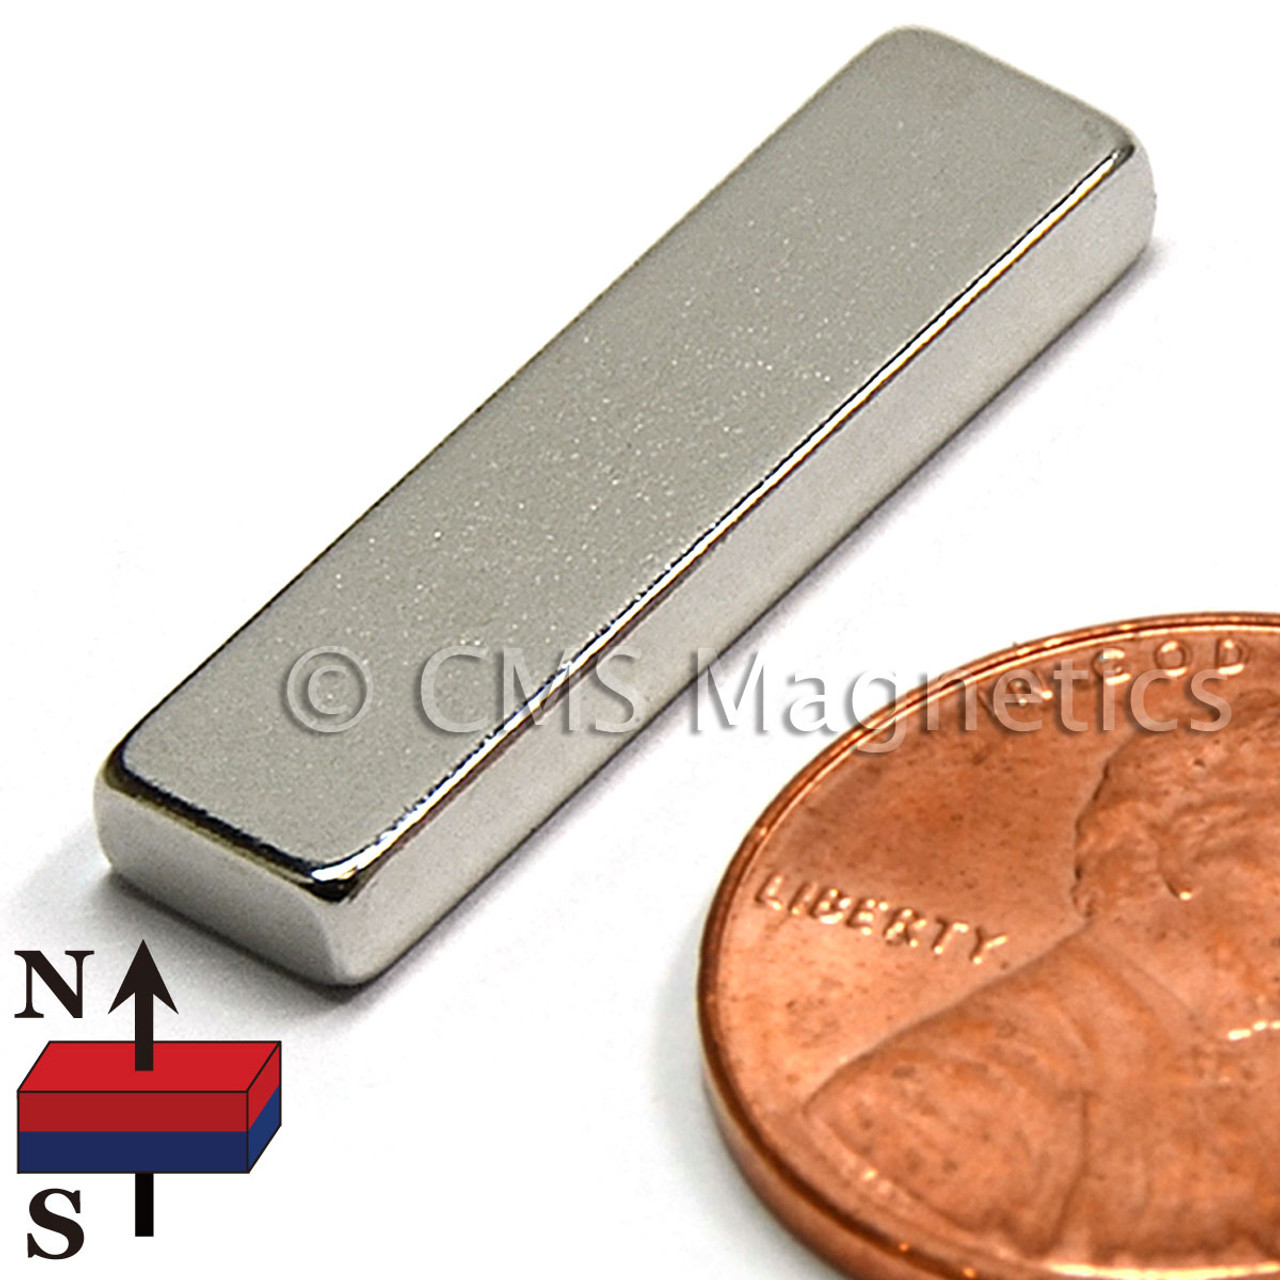 1"x1/4"x1/8" Neodymium Magnets